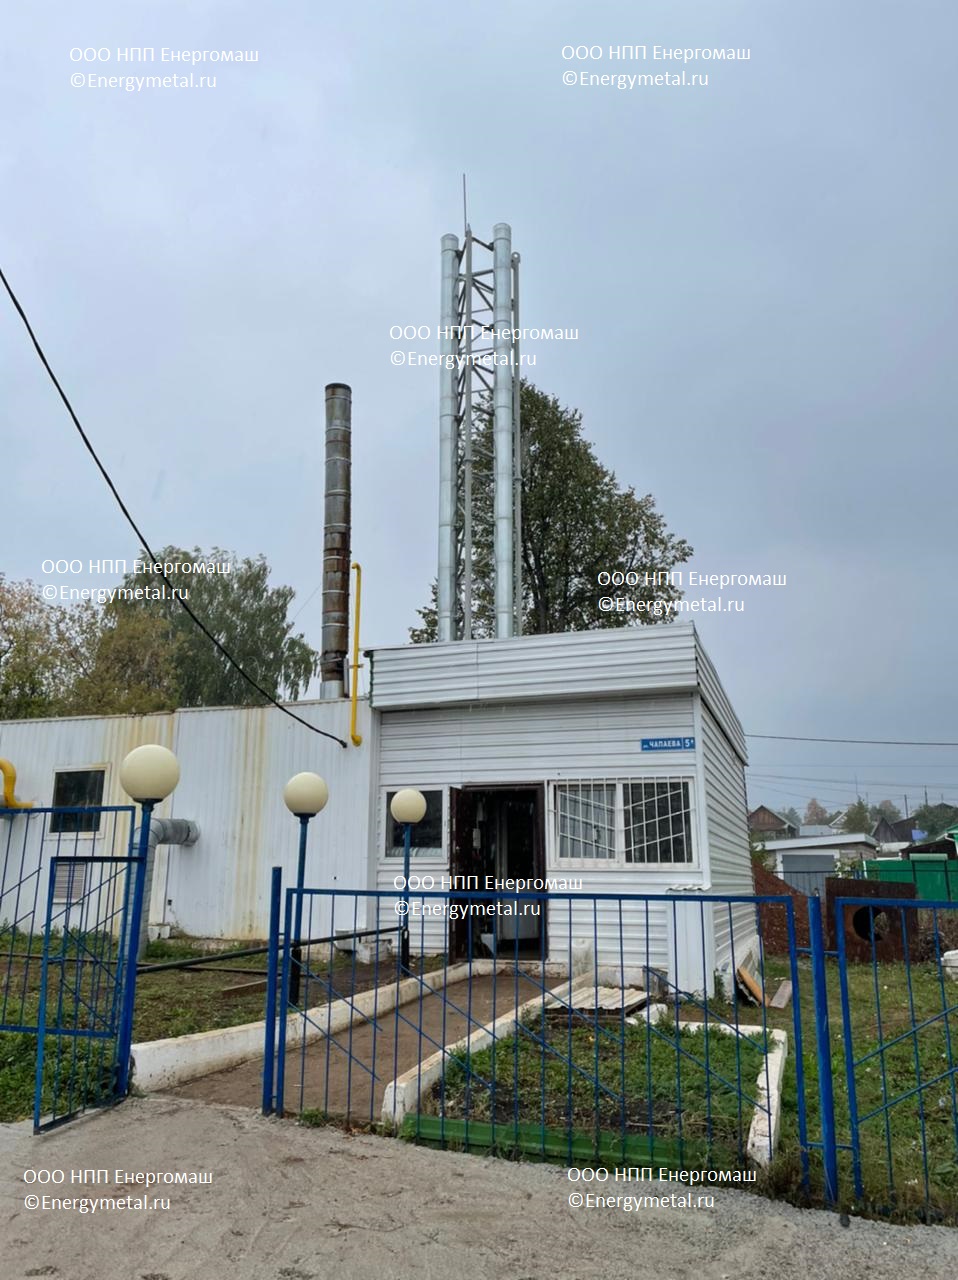 Дымовая труба 18 метров, Республика Татарстан.